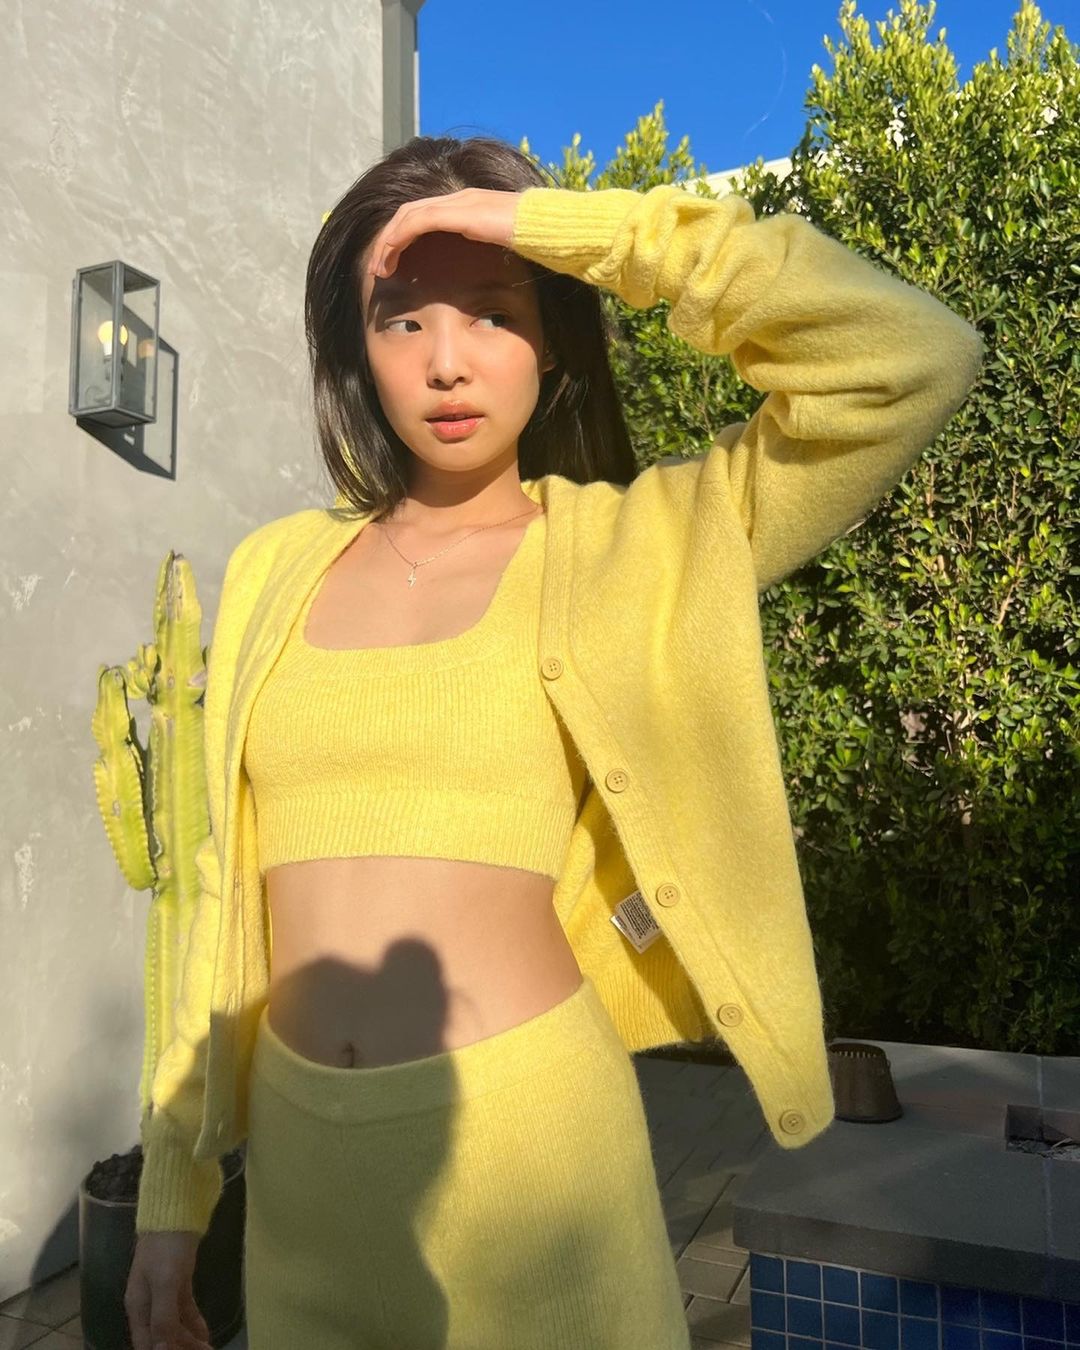 Trước Song Hye Kyo, nàng main rapper của BLACKPINK cũng từng diện một thiết kế tương tự với áo croptop, áo khoác và chân váy len màu vàng sáng. Kết hợp với phong cách trang điểm trong trẻo tự nhiên, nhan sắc của Jennie như tỏa sáng dưới ánh nắng mặt trời.